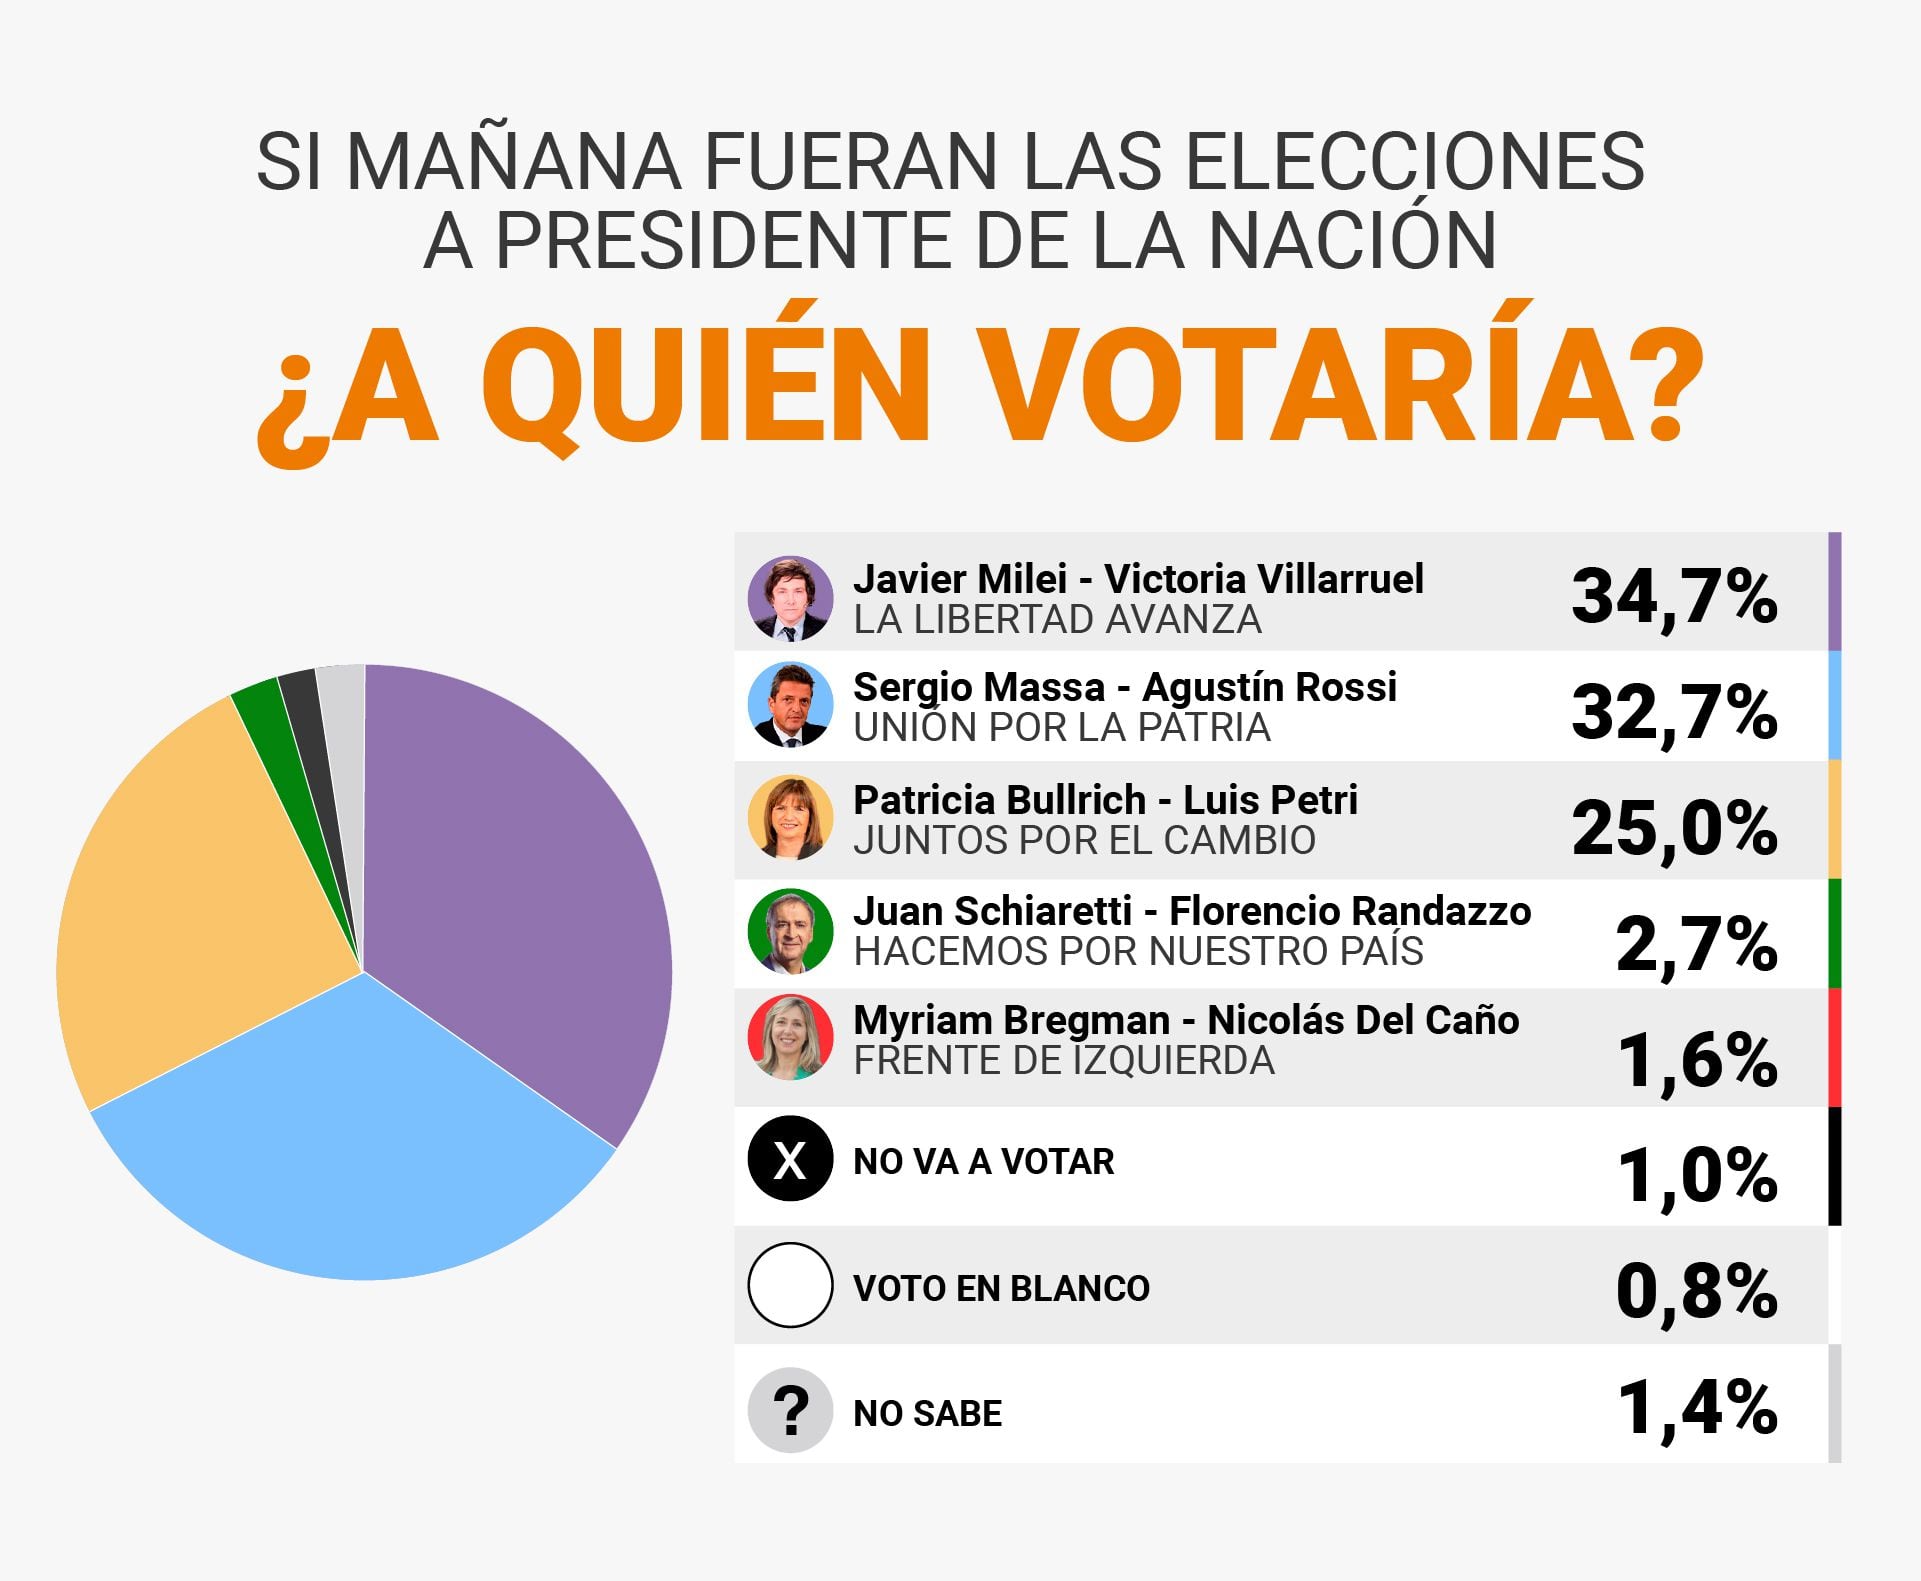 La dupla libertaria integrada por Javier Milei y Victoria Villarruel registra una intención de voto del 34,7% tras el primer debate presidencial, según la encuesta elaborada por la consultora Zuban Córdoba y Asociados. 